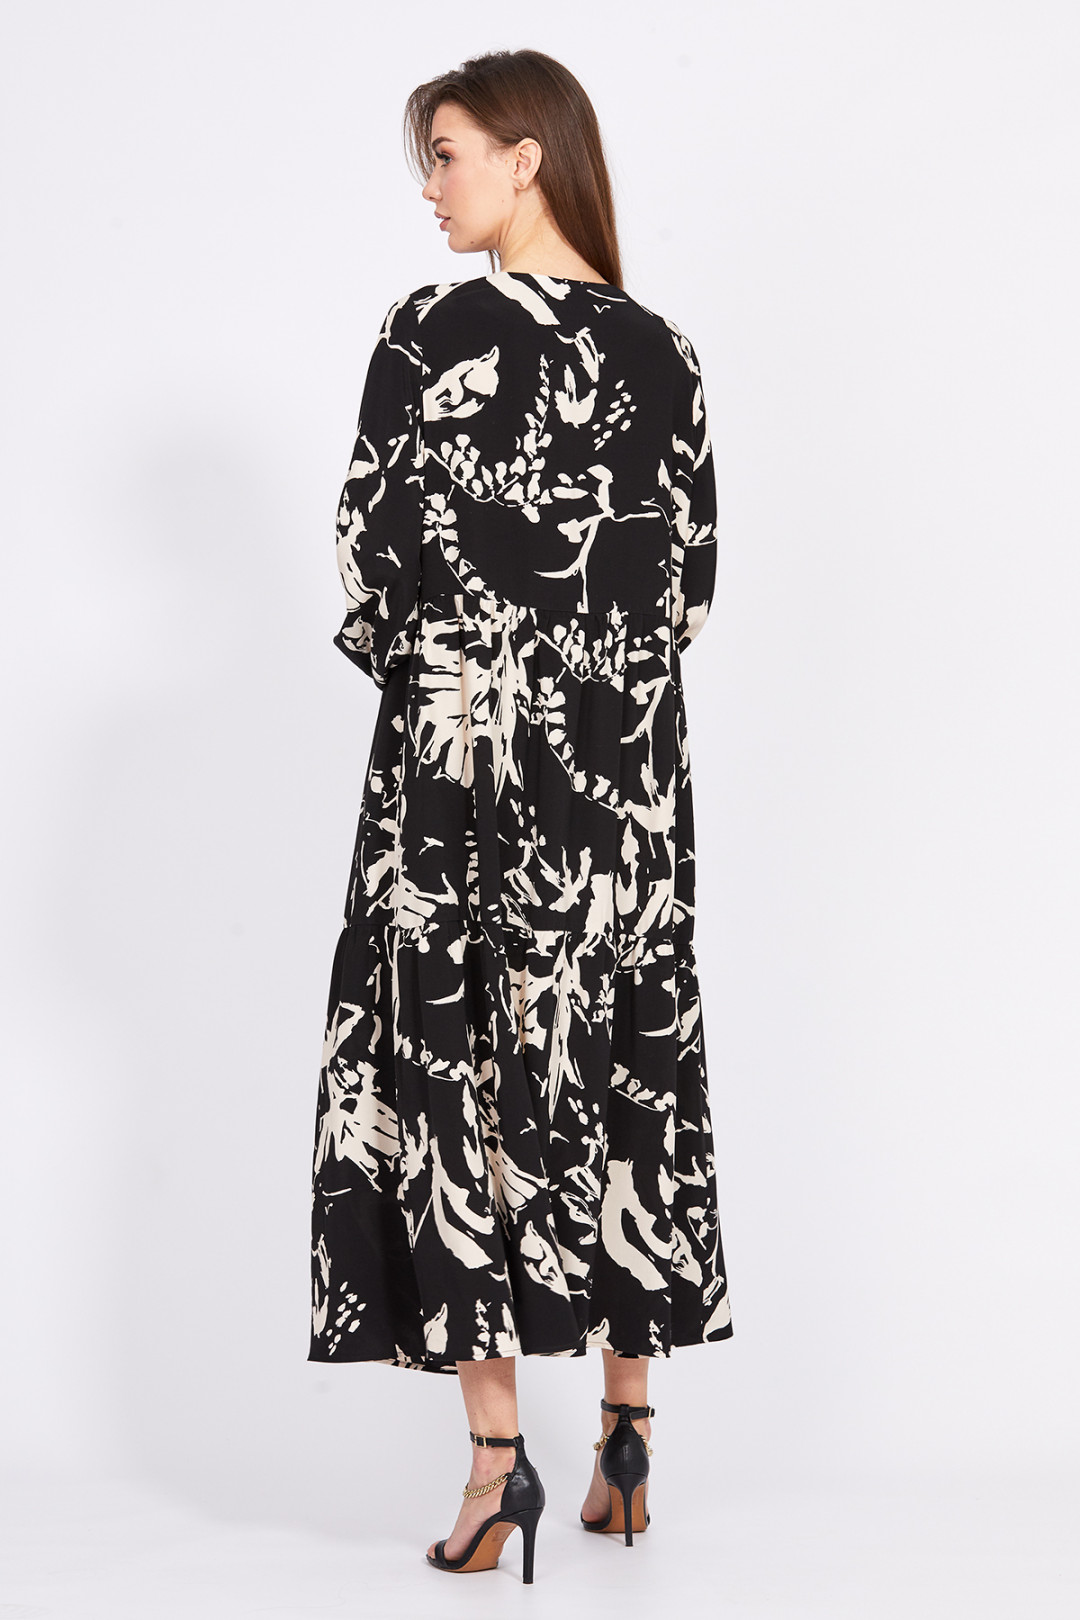 Платье Эола Стиль 2406 черный/ рисунок беж